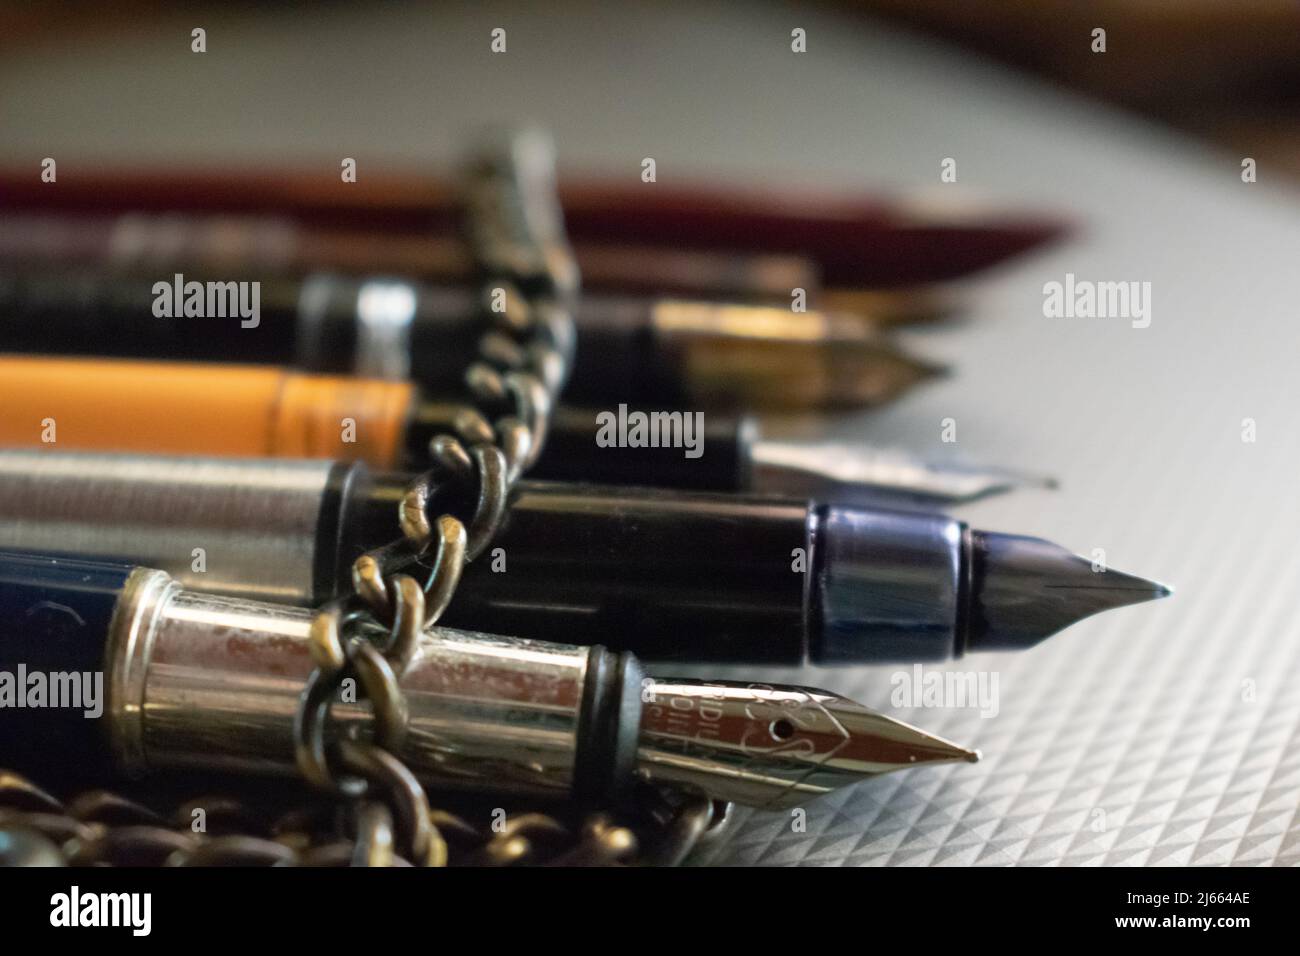 Peu de stylos enveloppés dans une chaîne en fer se trouvent sur la table. Concept- restriction de la liberté de parole. Banque D'Images